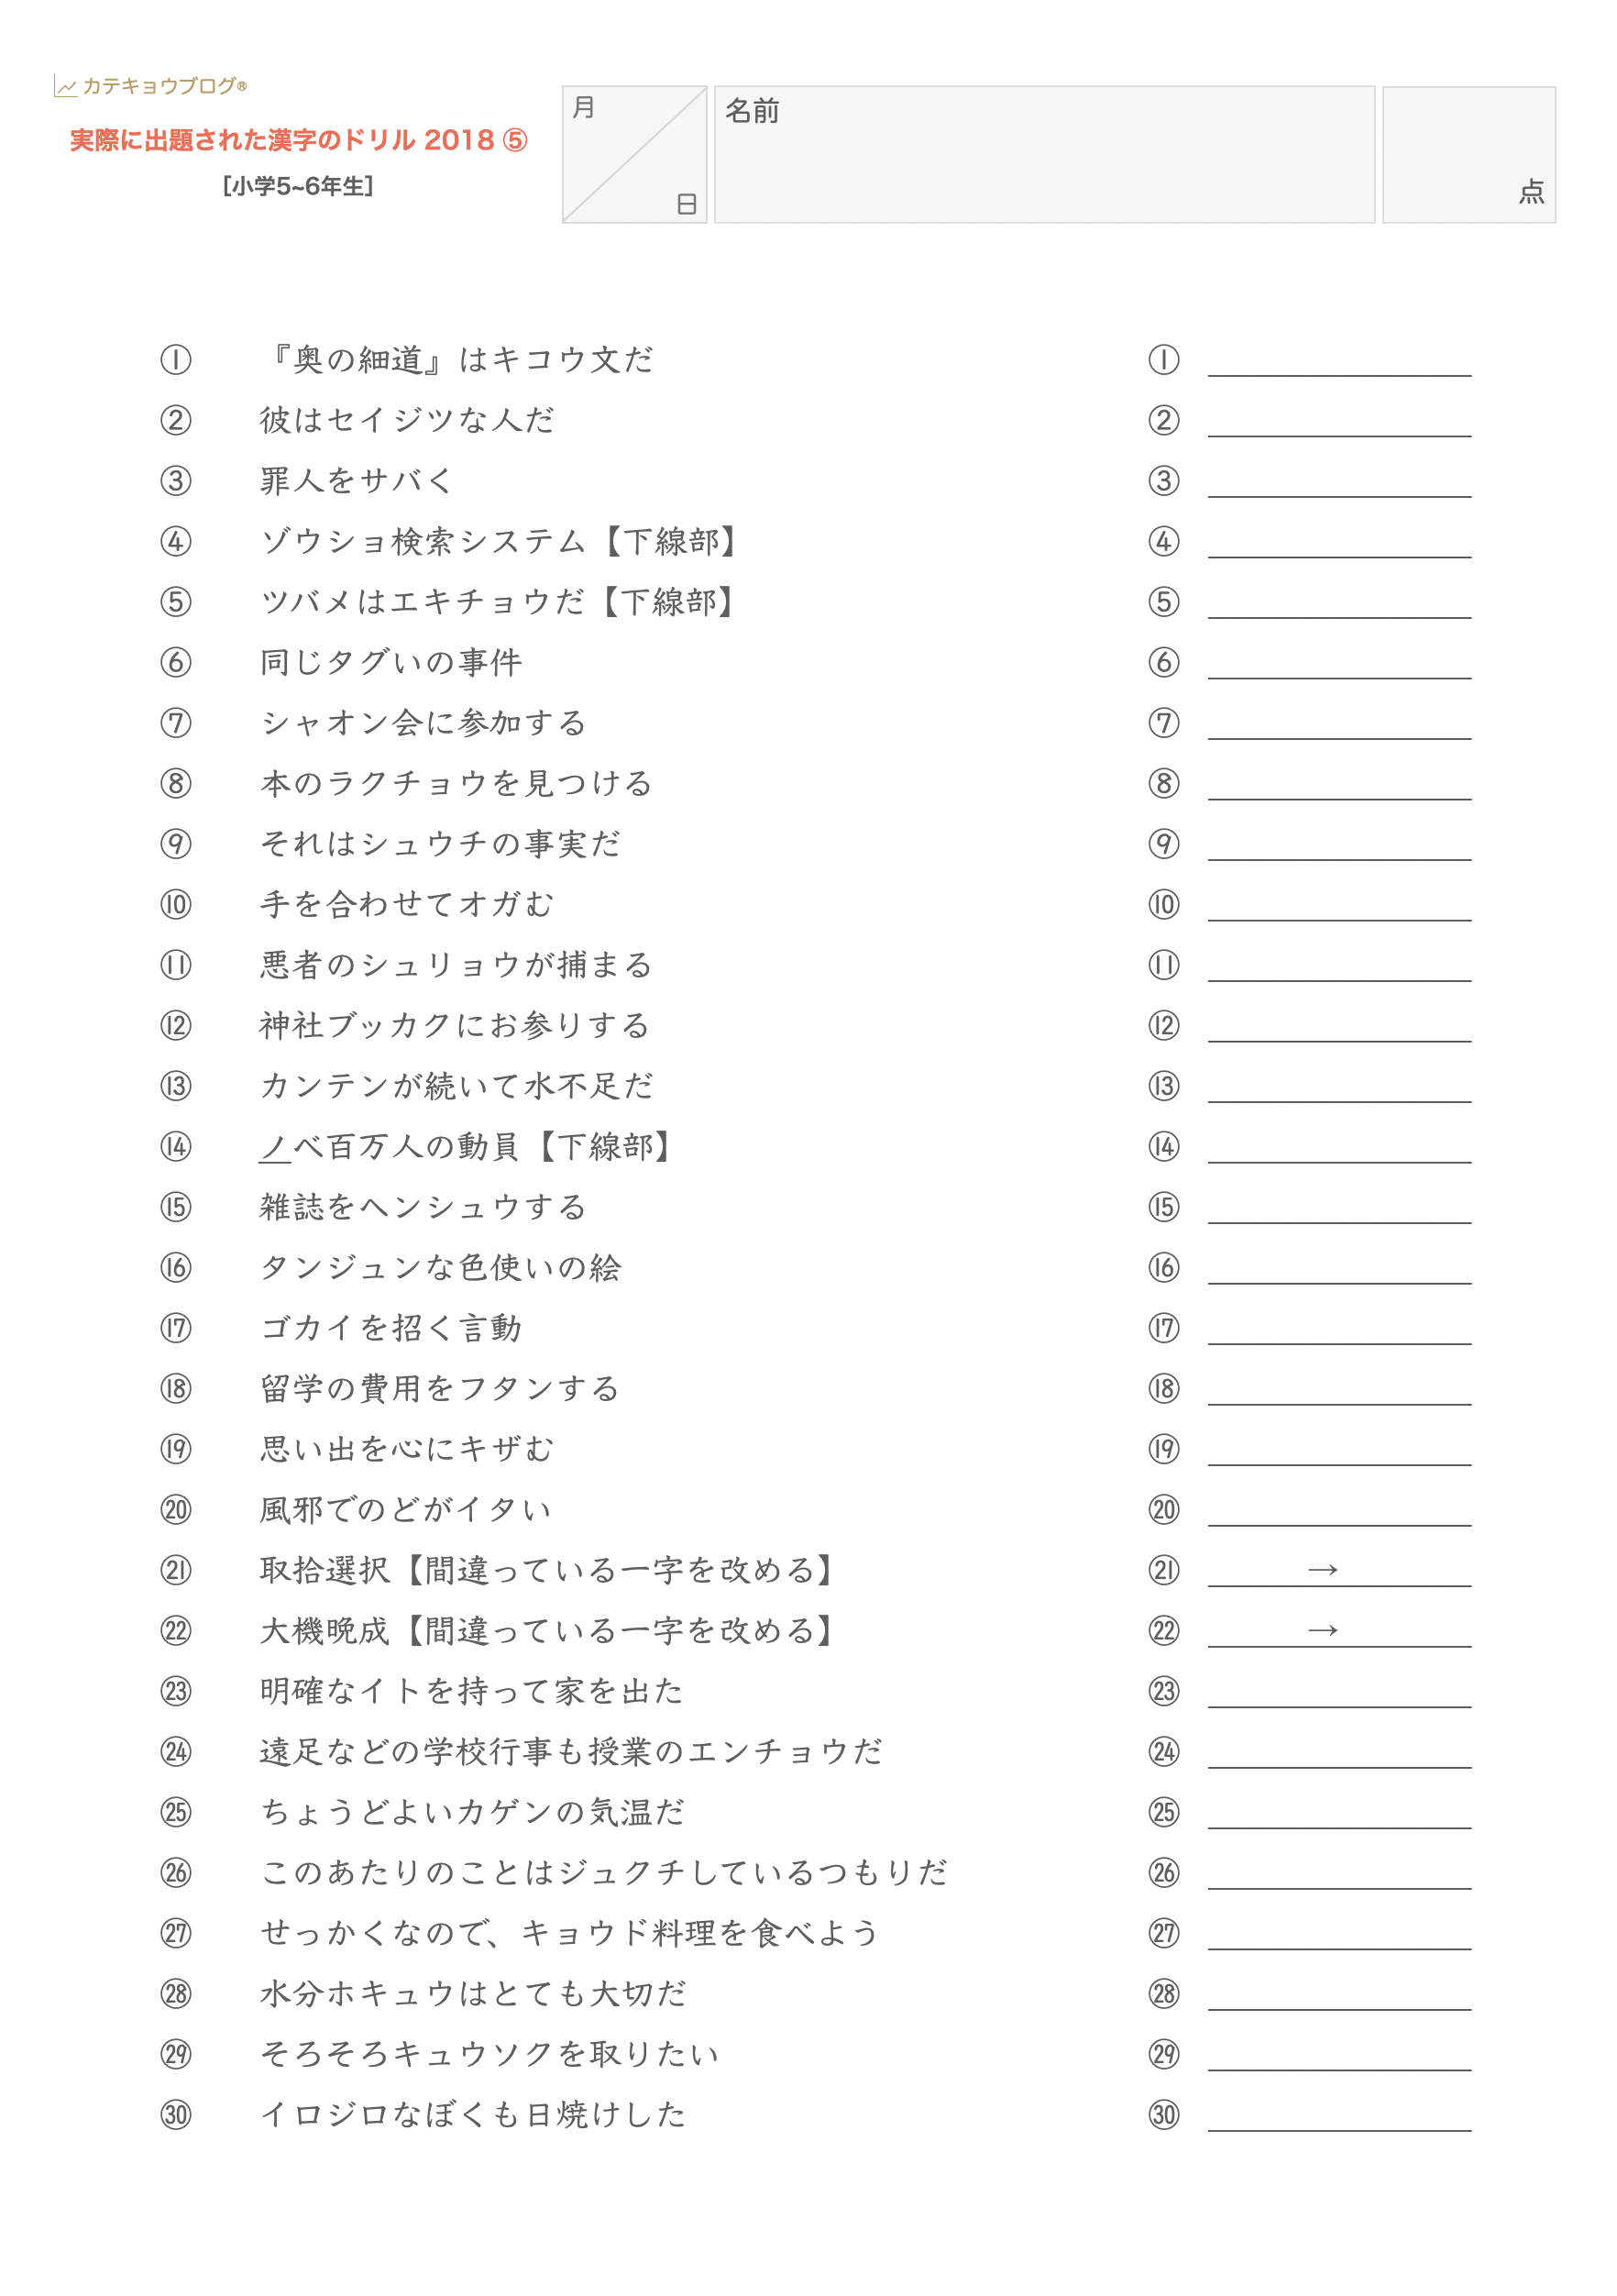 実際に出題された漢字のドリル 中学受験 カテキョウブログ